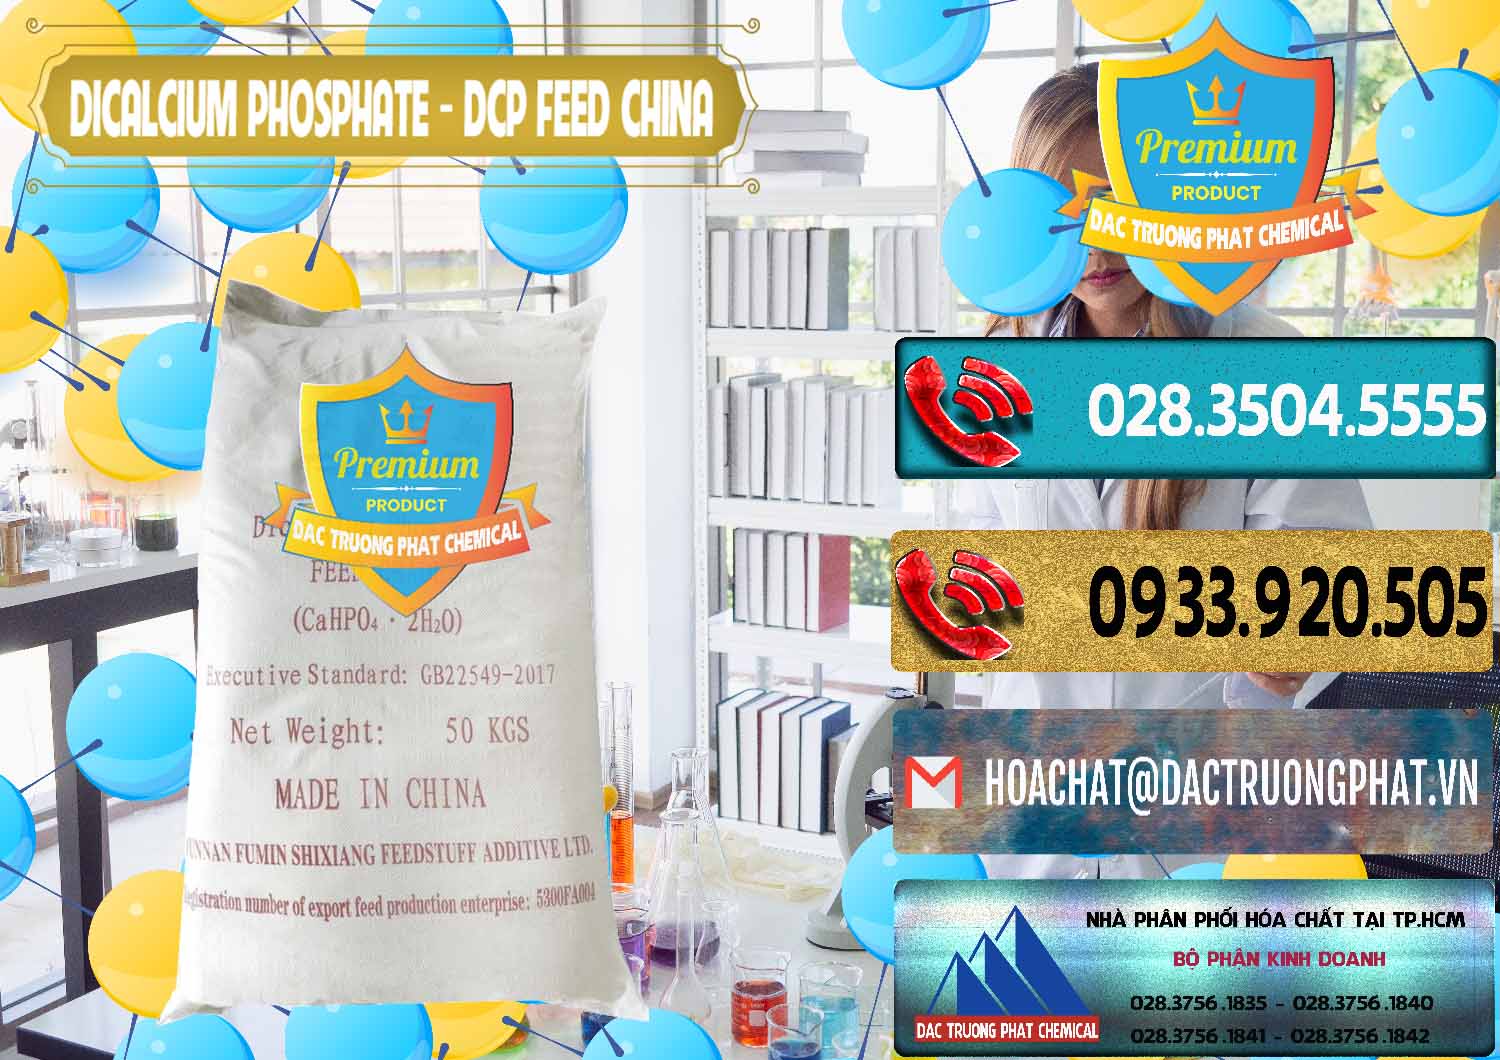 Đơn vị chuyên bán _ phân phối Dicalcium Phosphate - DCP Feed Grade Trung Quốc China - 0296 - Nơi chuyên cung cấp và nhập khẩu hóa chất tại TP.HCM - hoachatdetnhuom.com